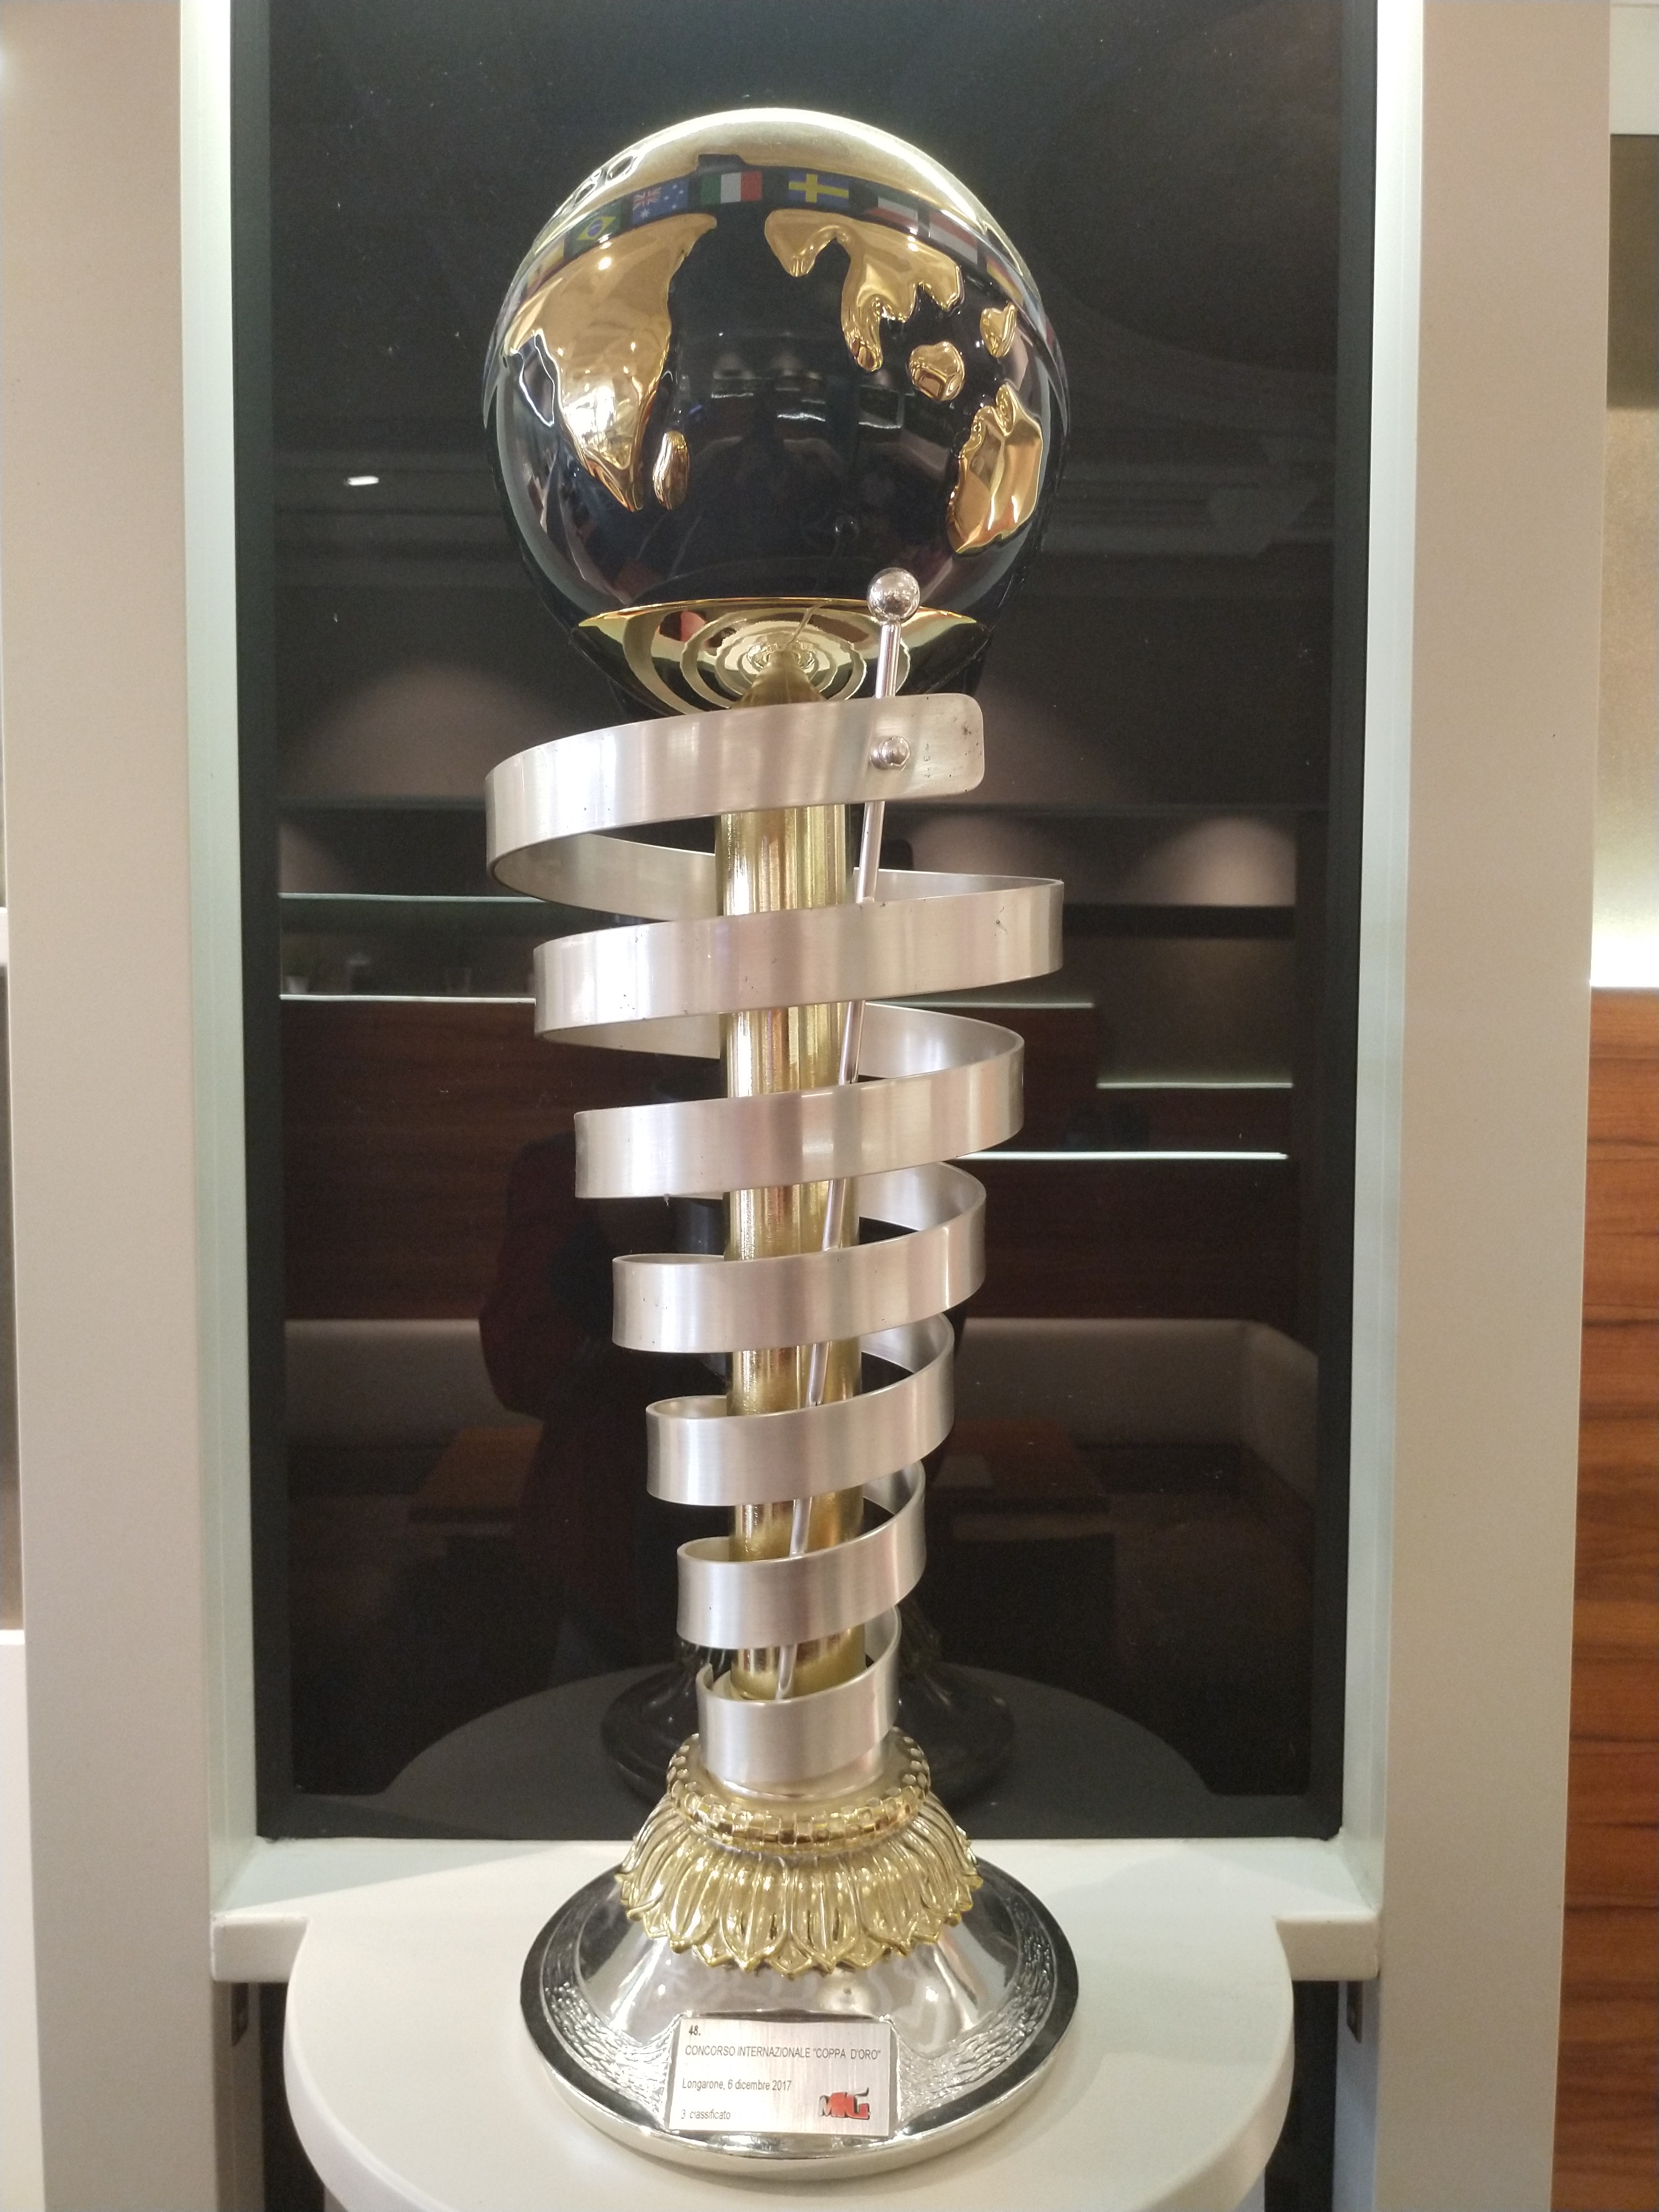 Pokal vom 3. Platz der Eismacher-Weltmeisterschaft 2017